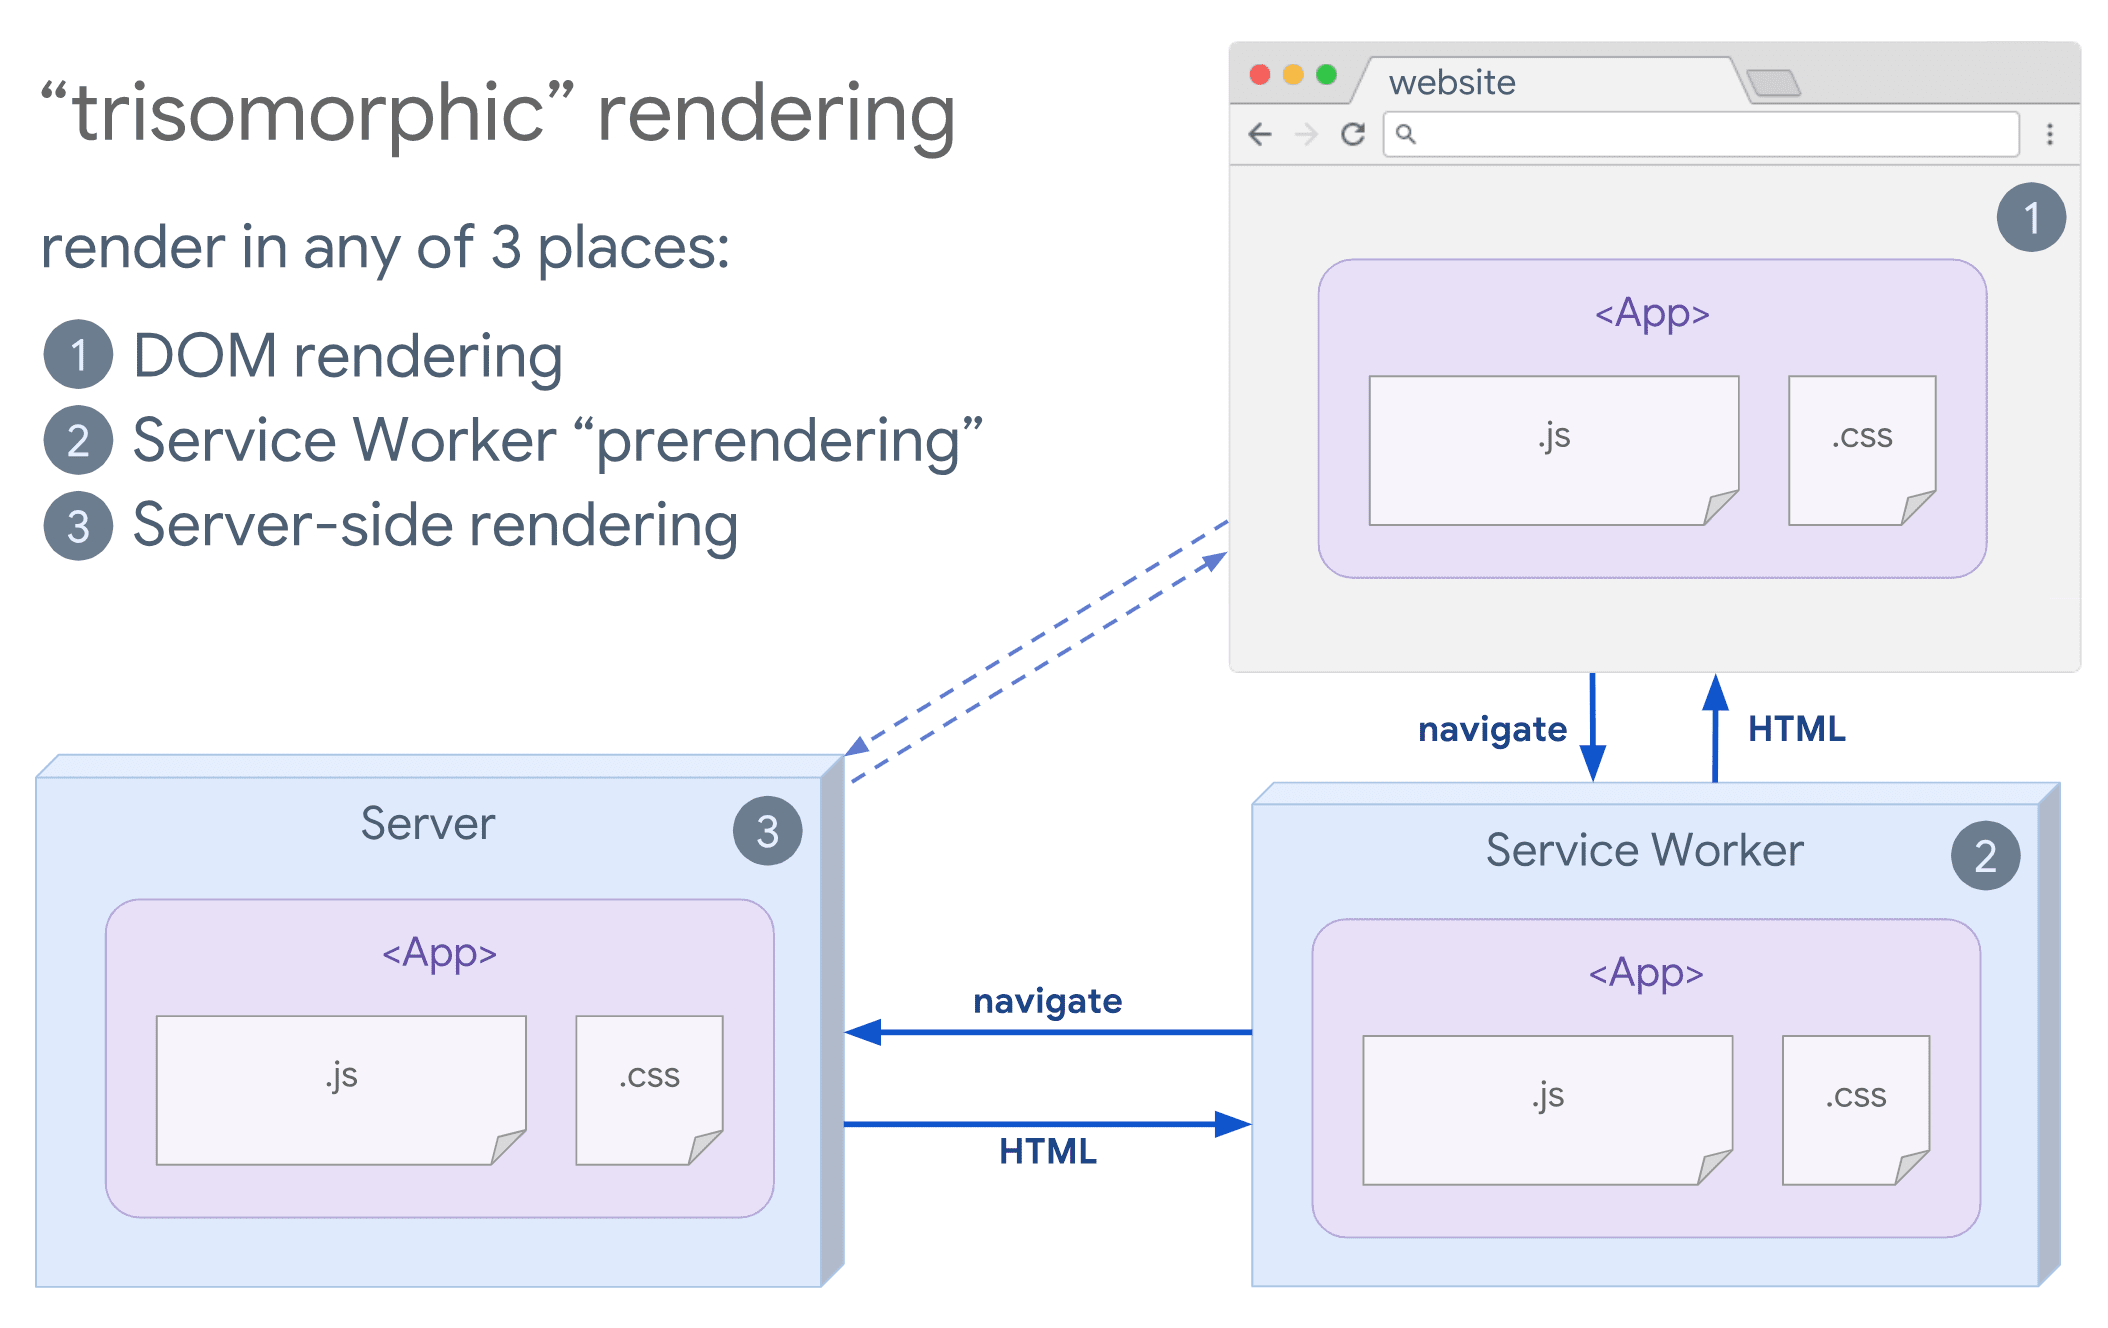 Diagrama de renderização trisomórfica mostrando um navegador e um service worker se comunicando com o servidor.